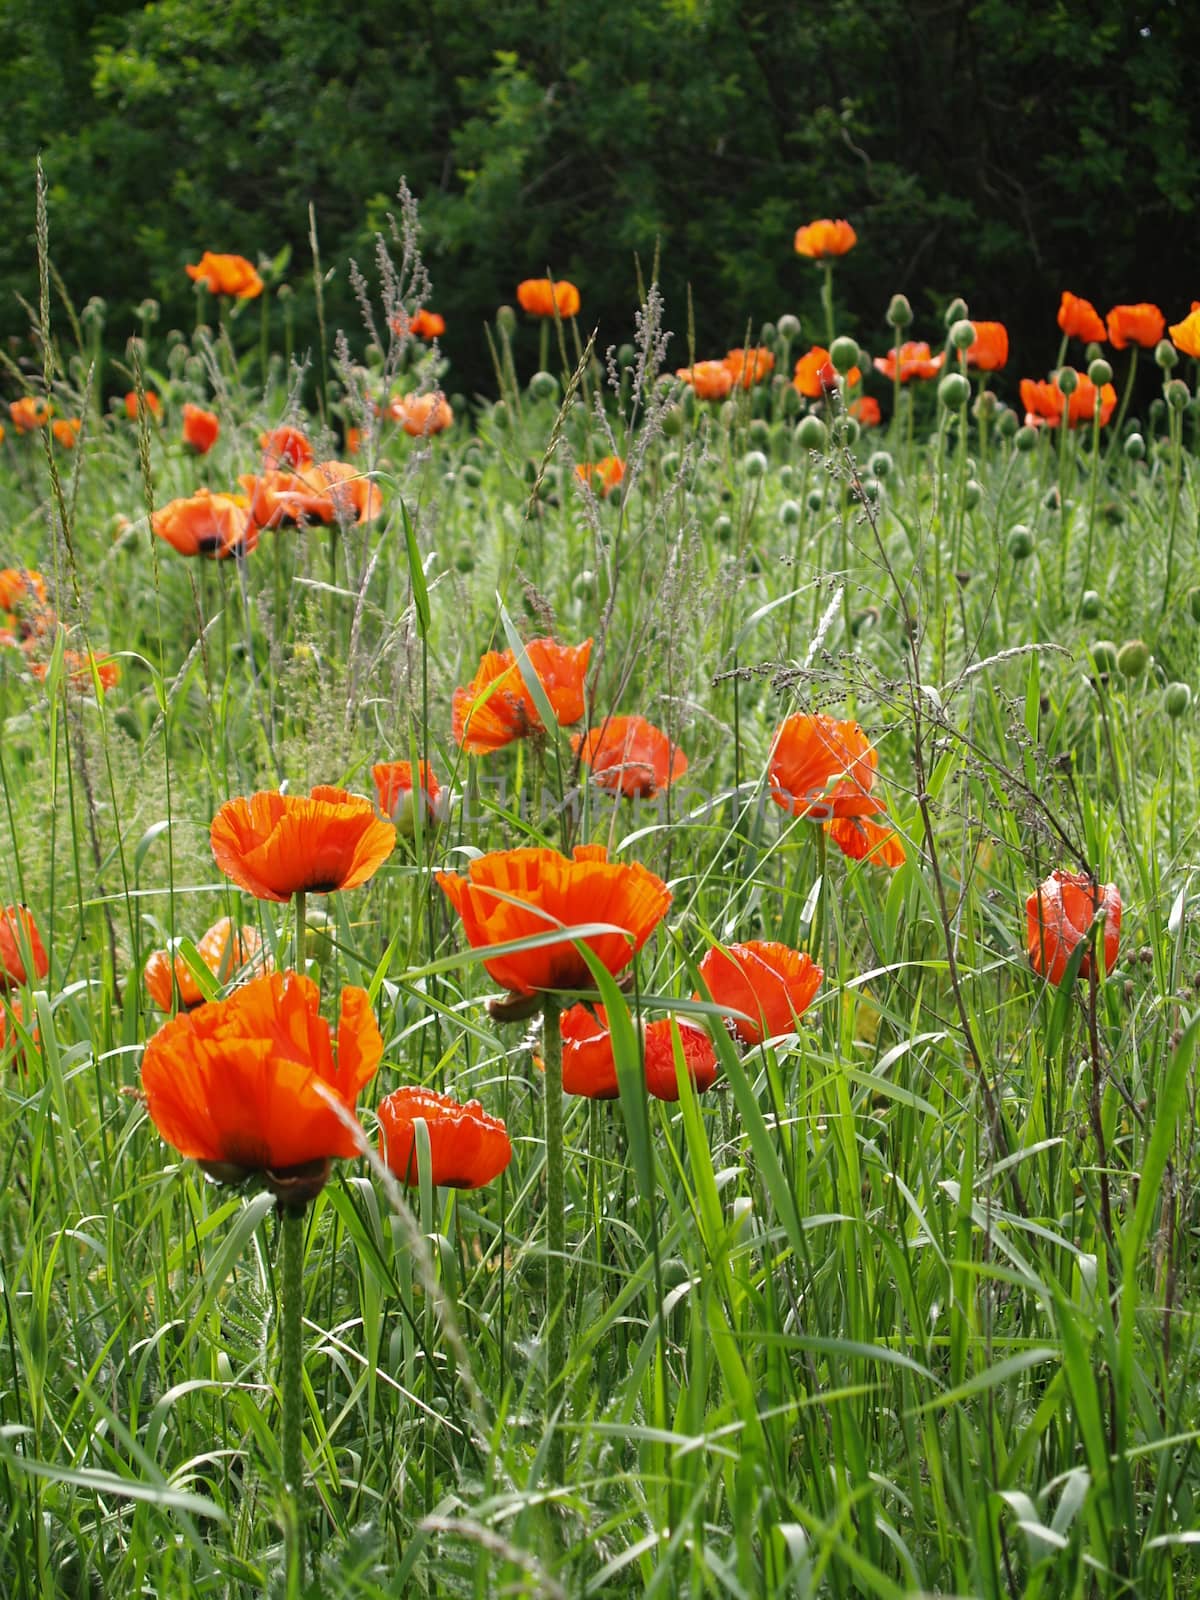 Orange Poppies Growing Wild in a Field